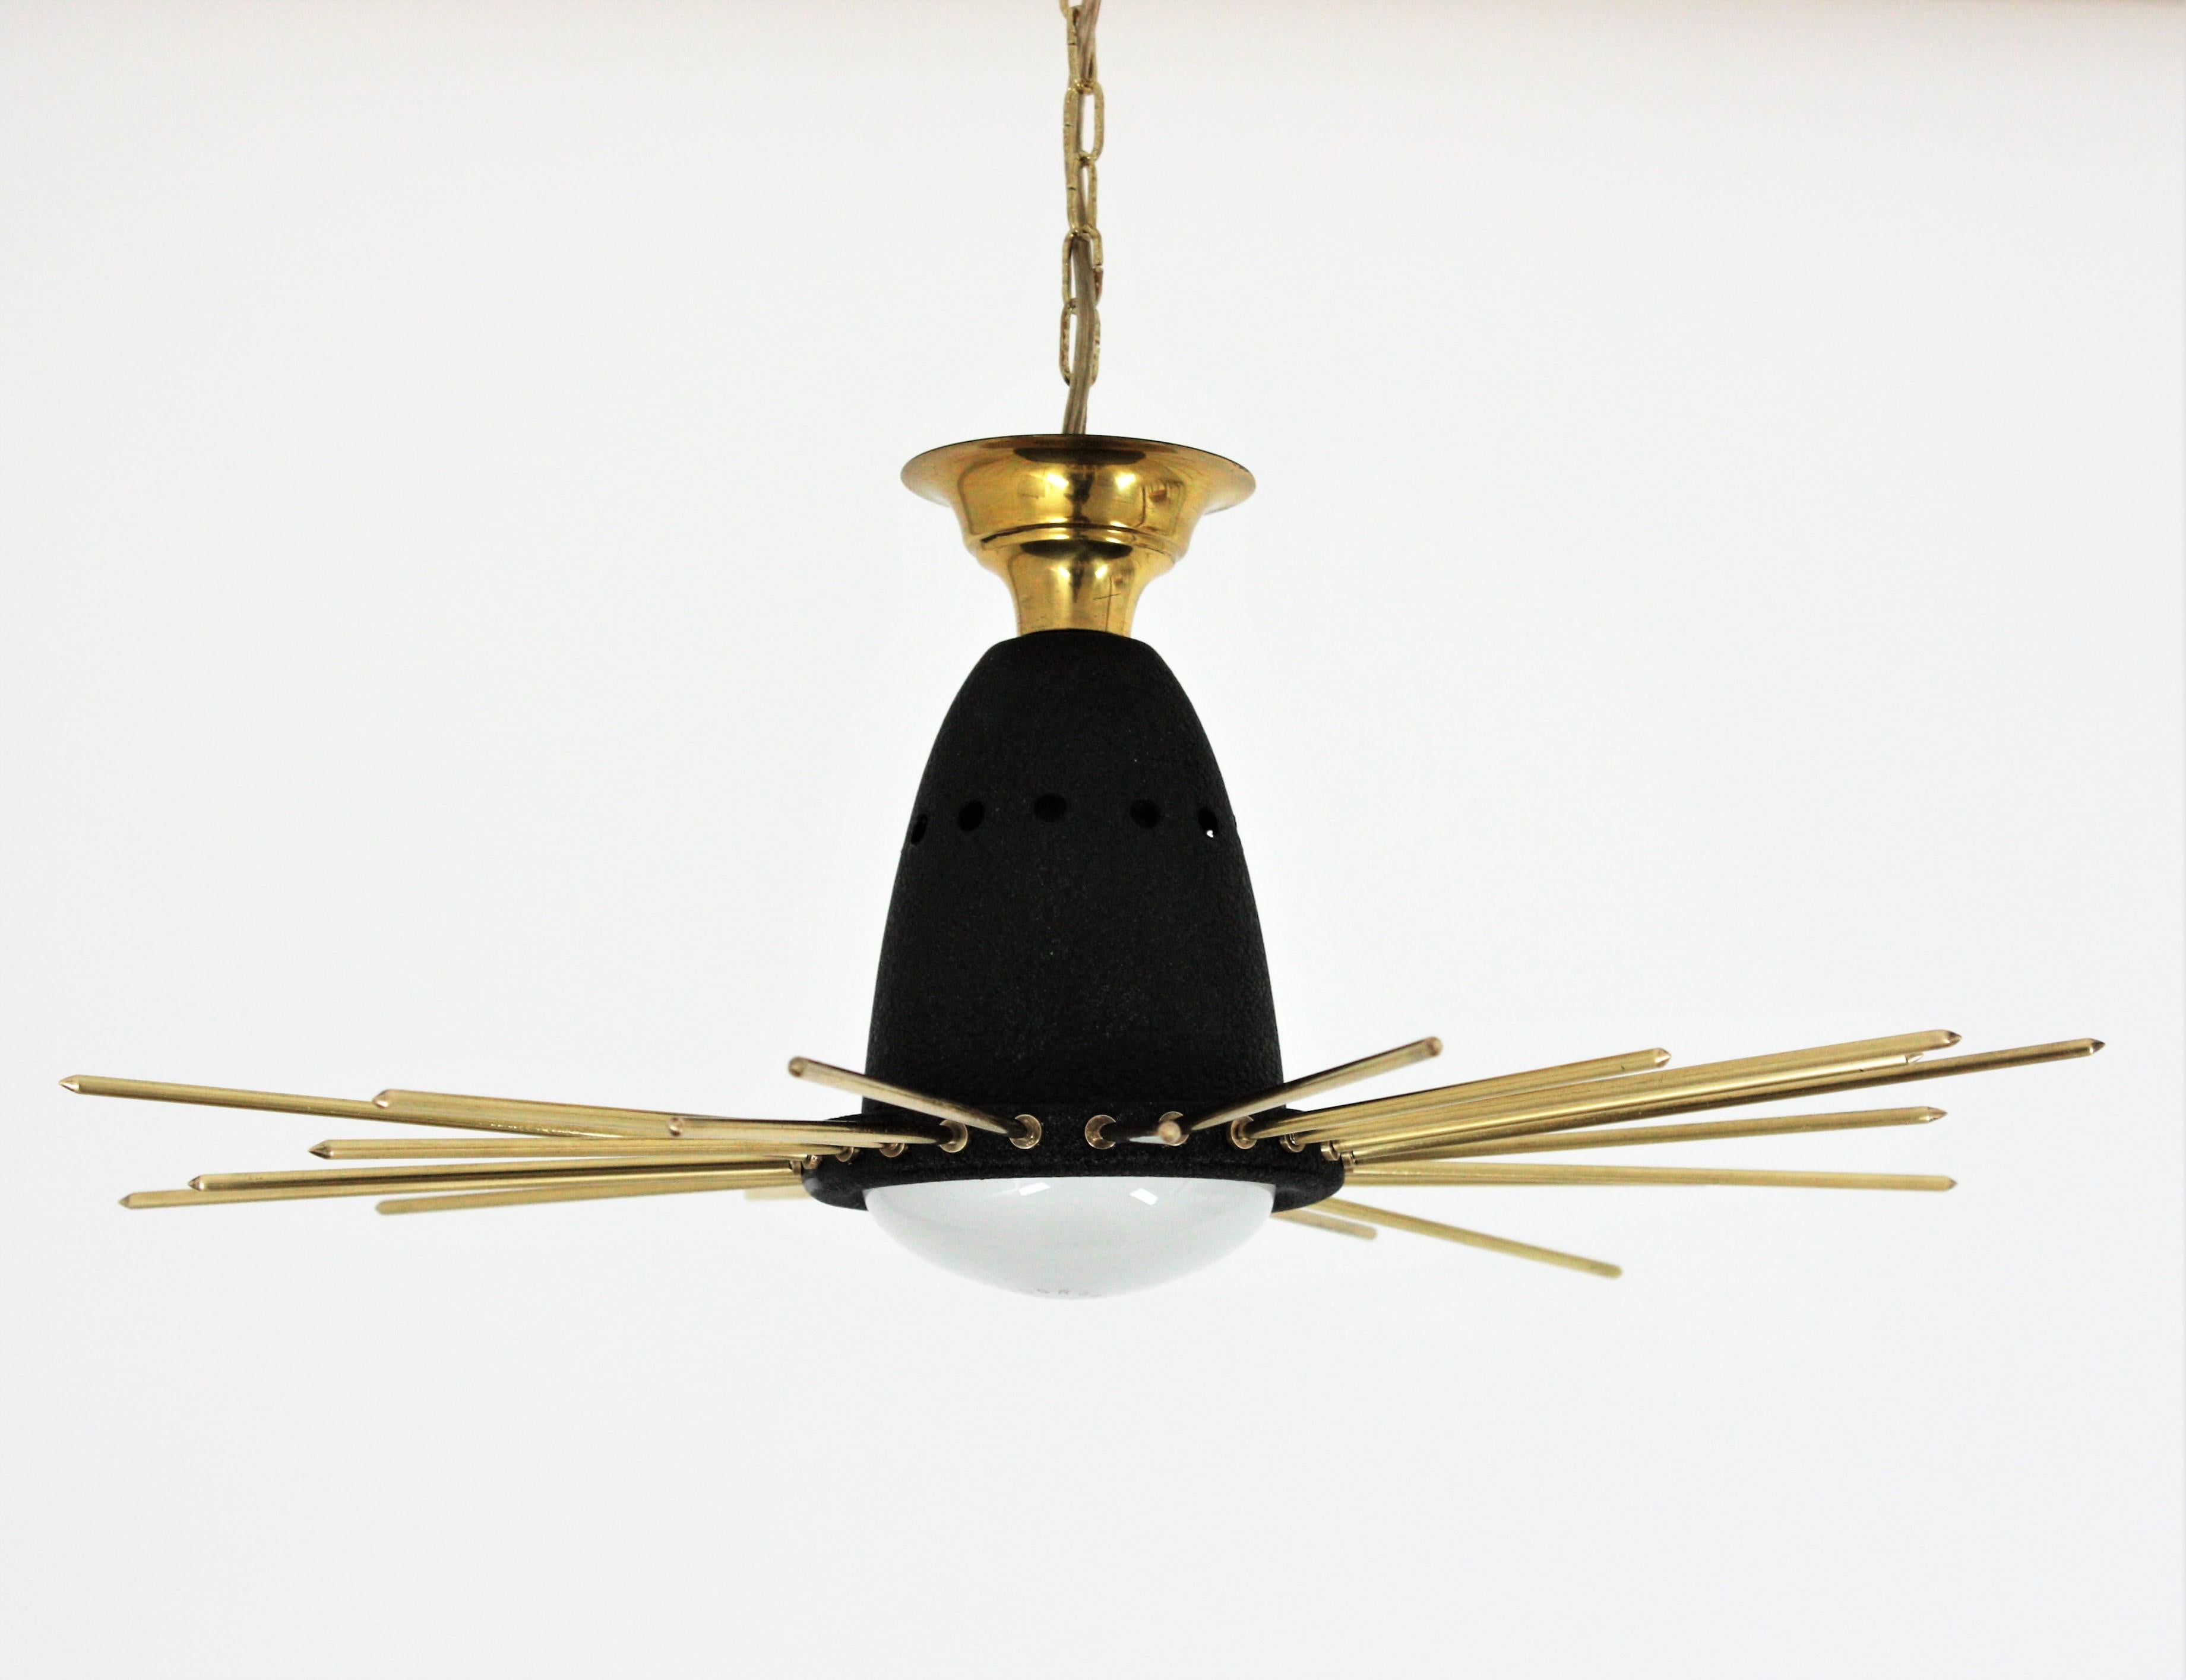 Italian Sunburst Flush Mount Pendant Light, Brass and Black Metal, 1950s For Sale 5